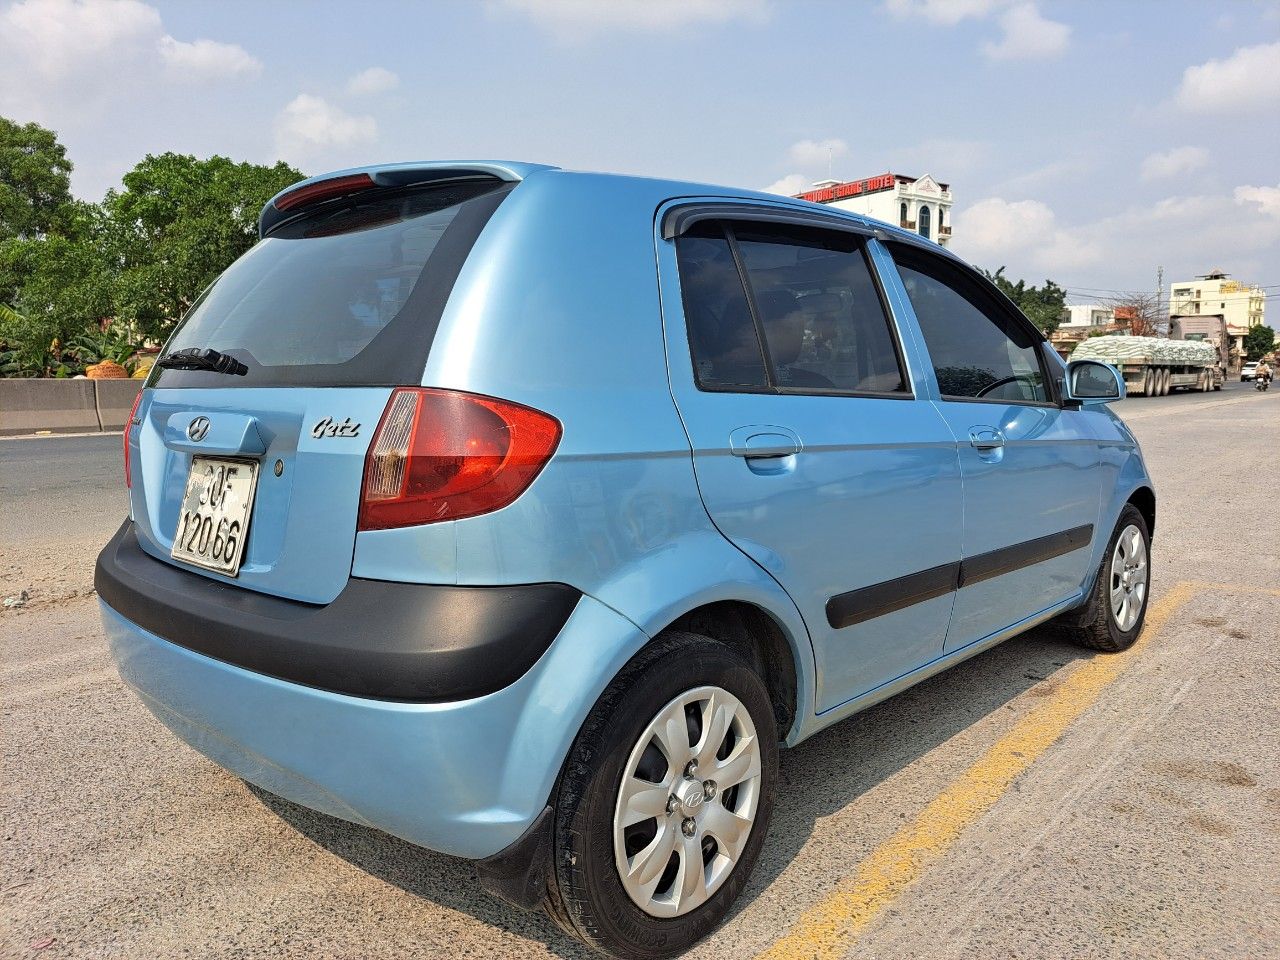 Hyundai Getz 2010 - Màu xanh lam, xe nhập giá ưu đãi